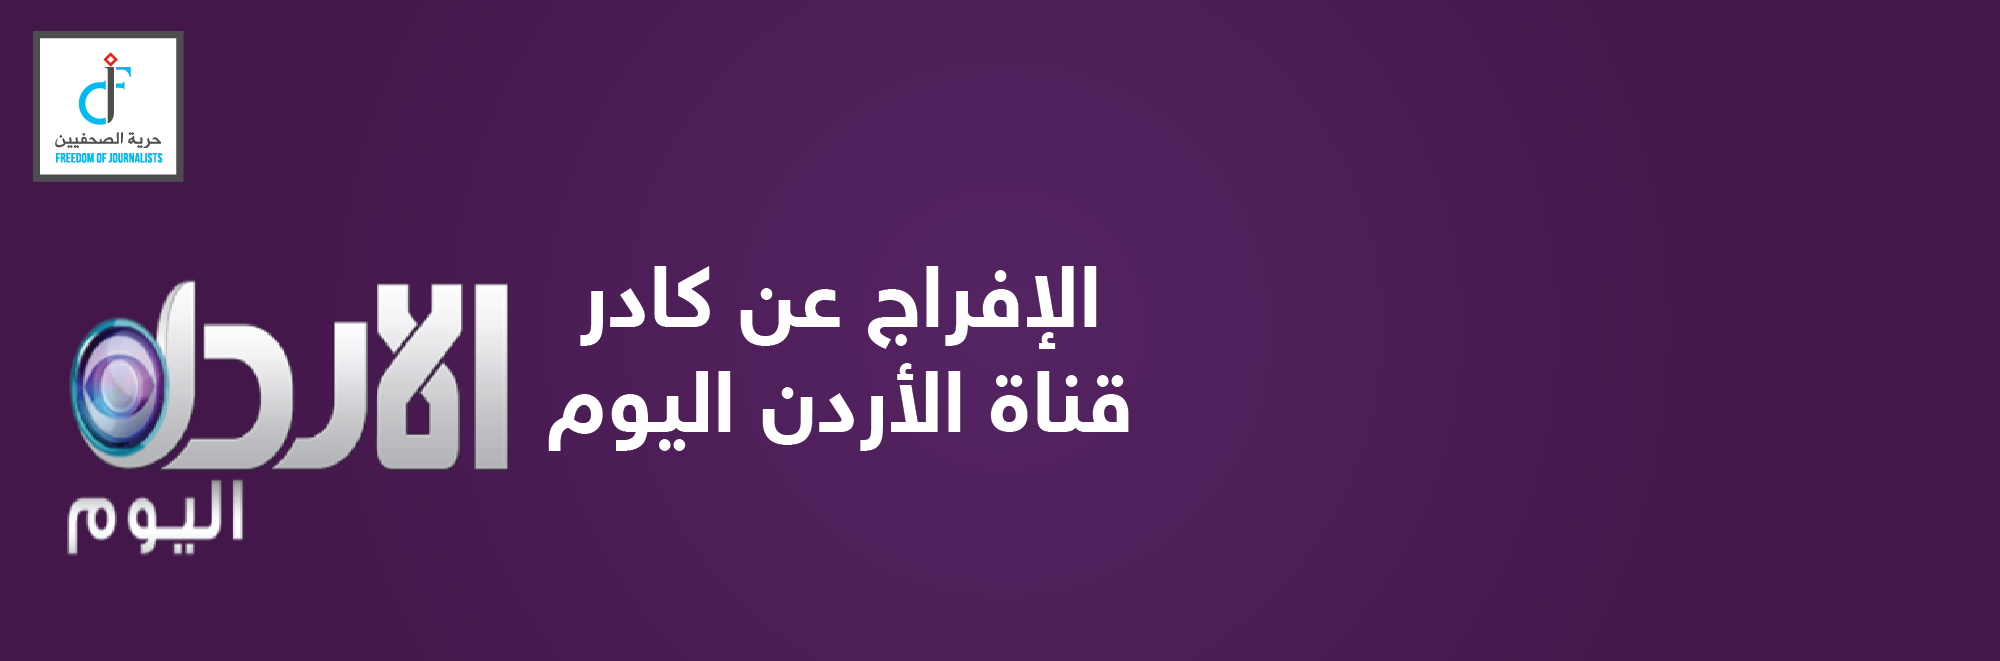 “حرية الصحفيين ” يقدر للحكومة الافراج الفوري عن الاعلاميين